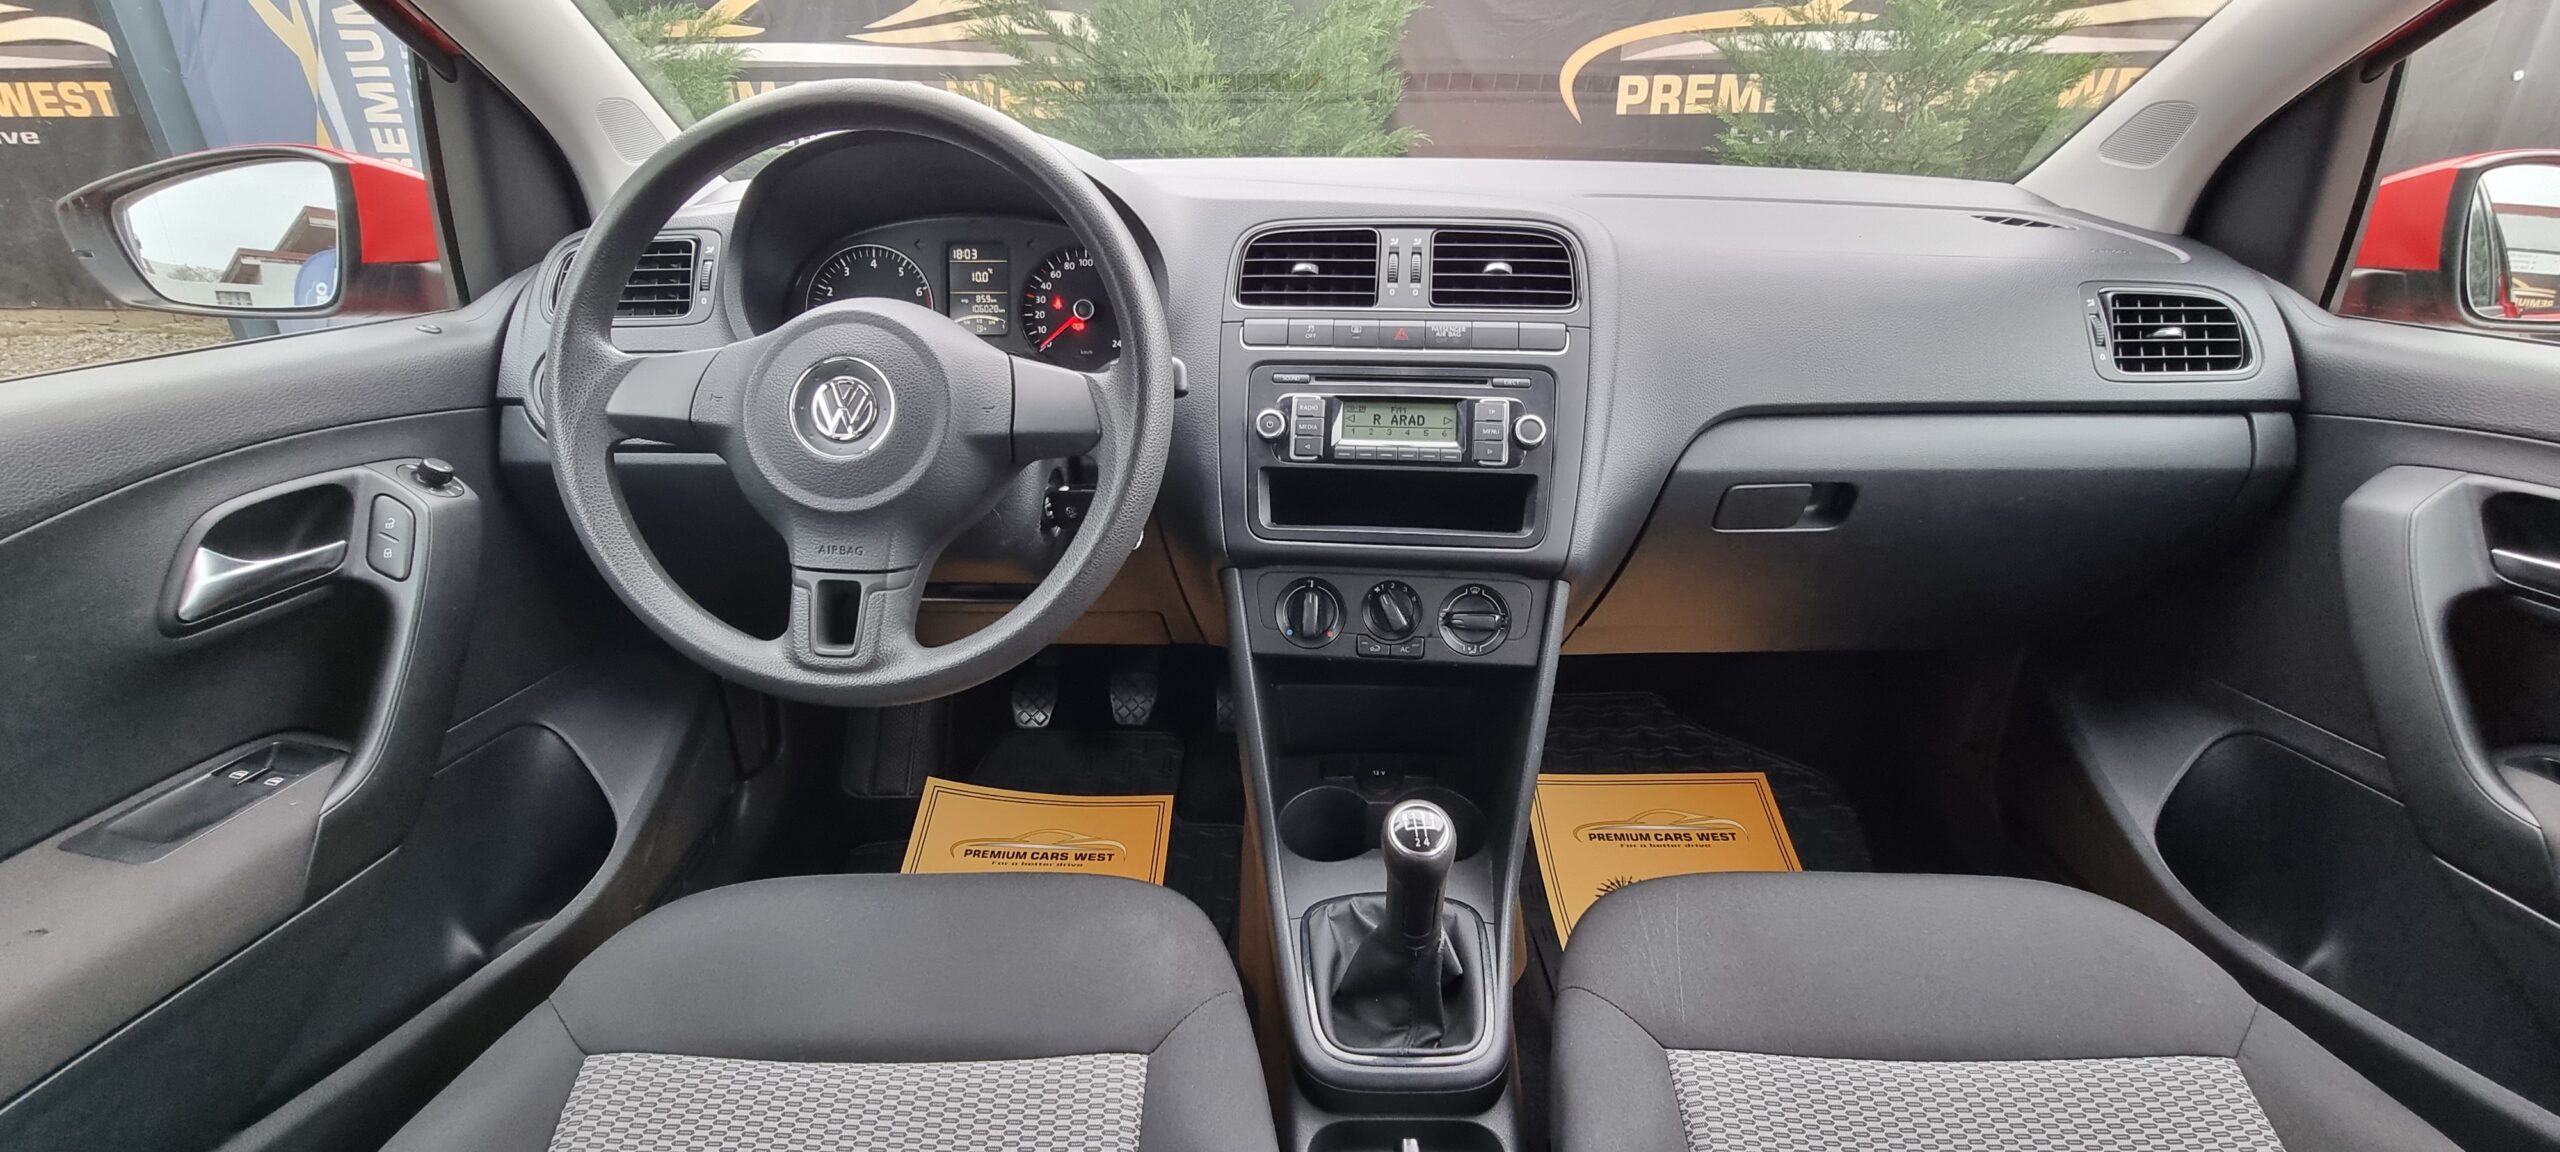 VW POLO 1.2 BENZINA, 60 CP, EURO 5, AN 2011